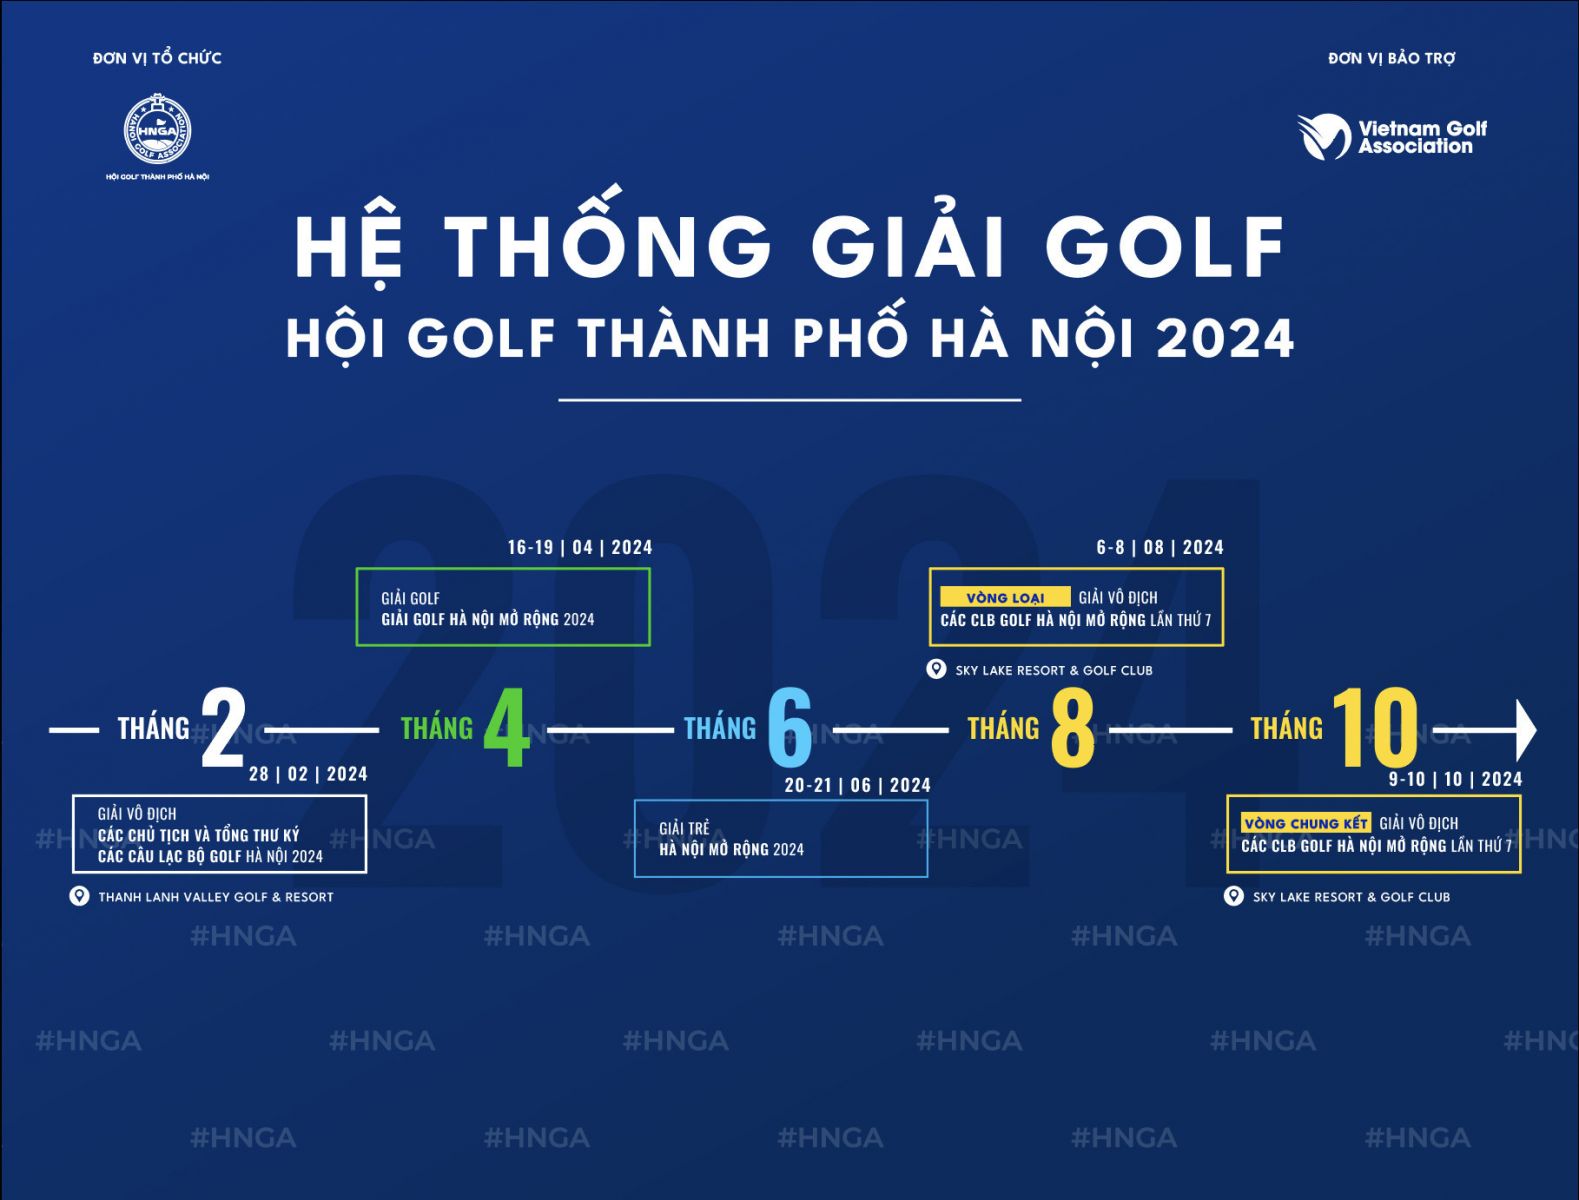 Hội Golf TP Hà Nội Công Bố Lịch Trình Giải Đấu Năm 2024